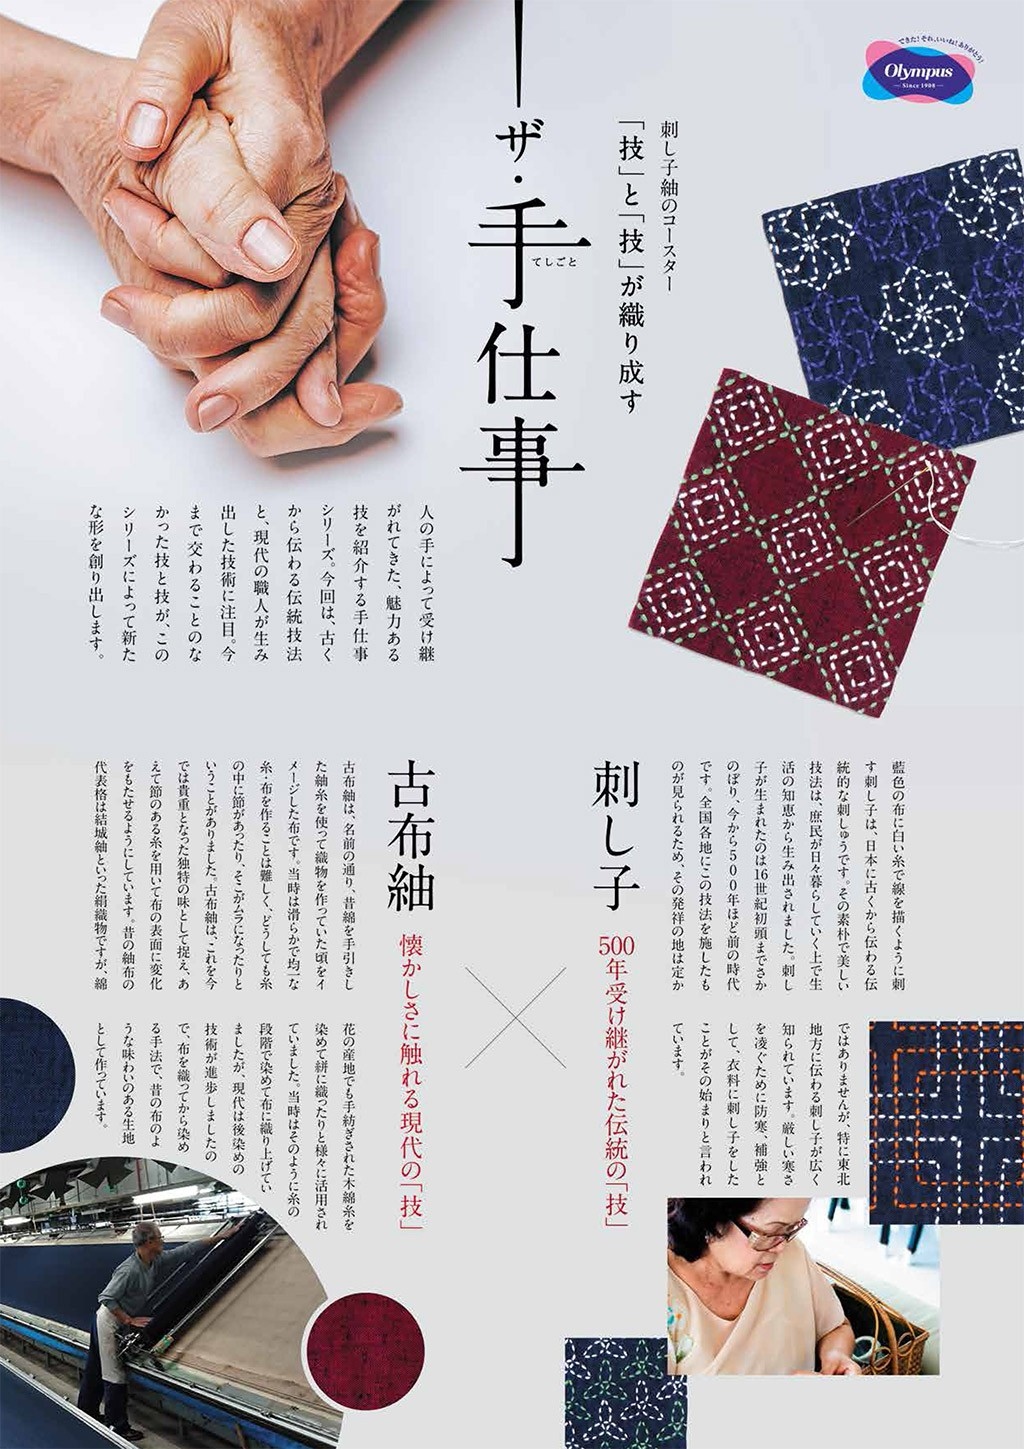 ○6月下旬発売〇 刺し子紬のコースター -ザ・手仕事- | お知らせ | 手芸のオリムパス